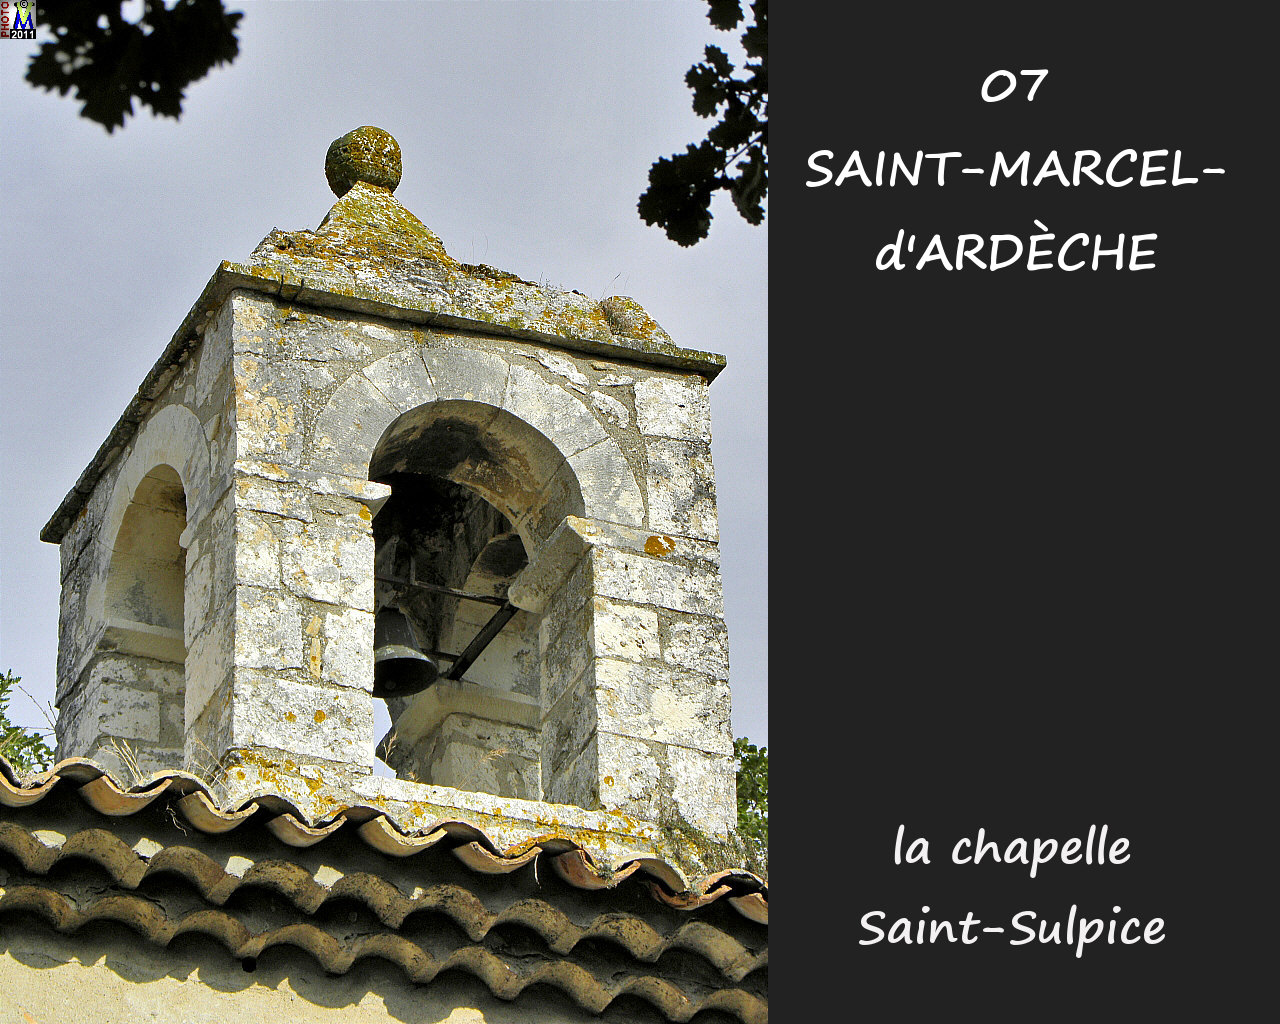 07StMARCEL-ARDECHE_chapelle_110.jpg